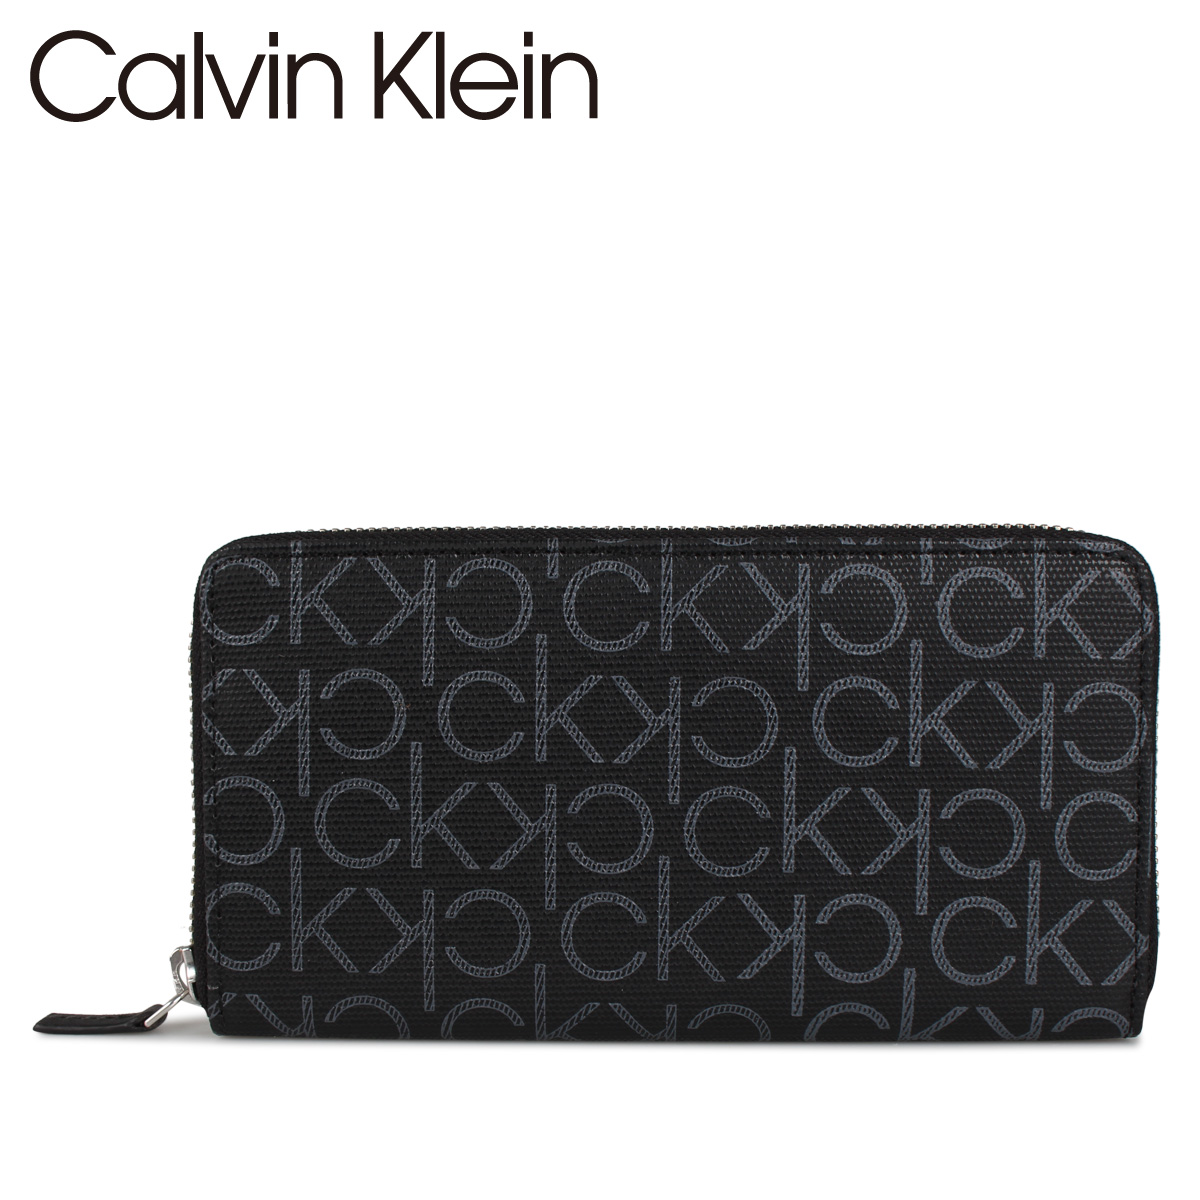 楽天市場 Calvin Klein カルバンクライン 財布 長財布 メンズ ラウンドファスナー レザー モノグラム Logo Zip Around Wallet ブラック 黒 シュガーオンラインショップ